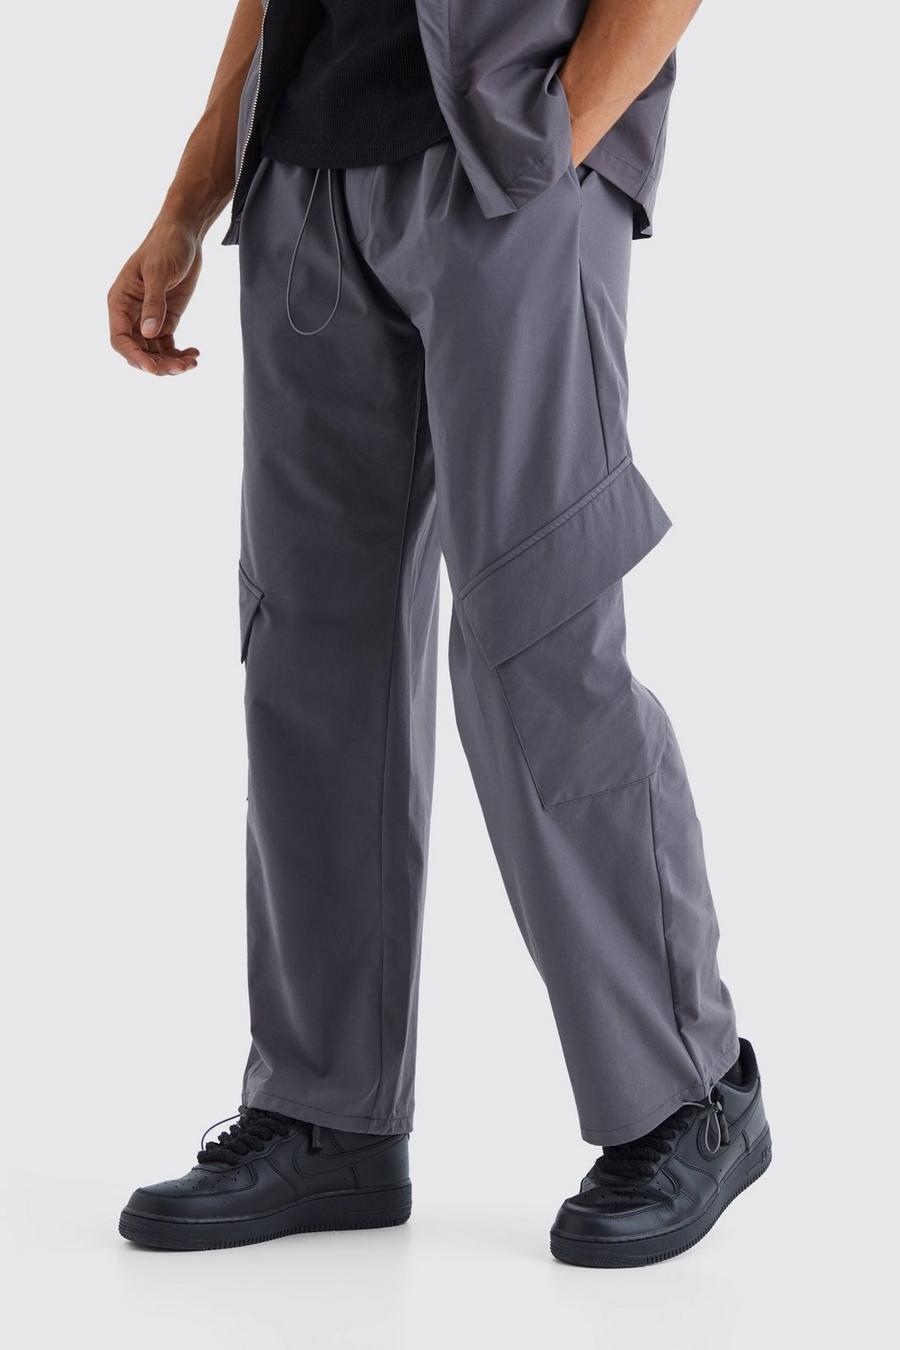 Pantaloni Cargo tecnici con vita elasticizzata, Charcoal